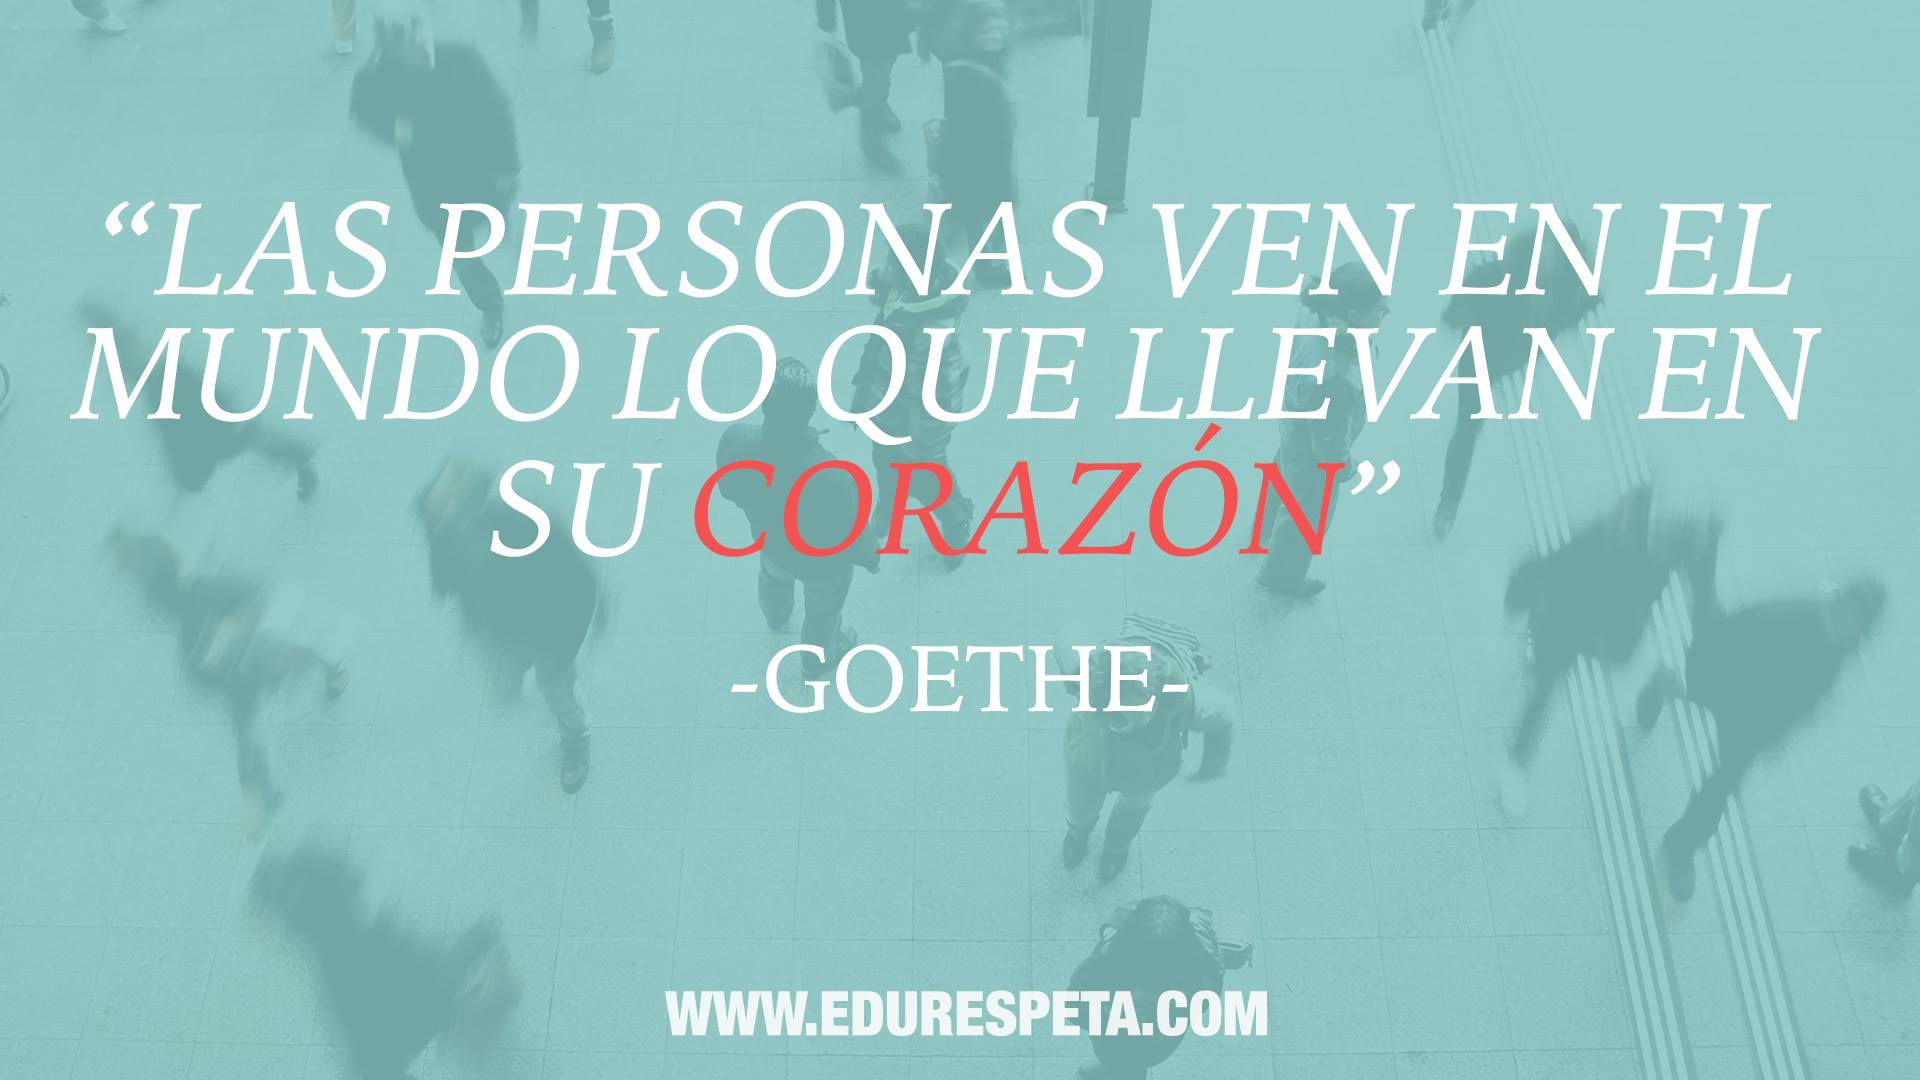 Las personas ven en el mundo lo que llevan en su corazón. Goethe